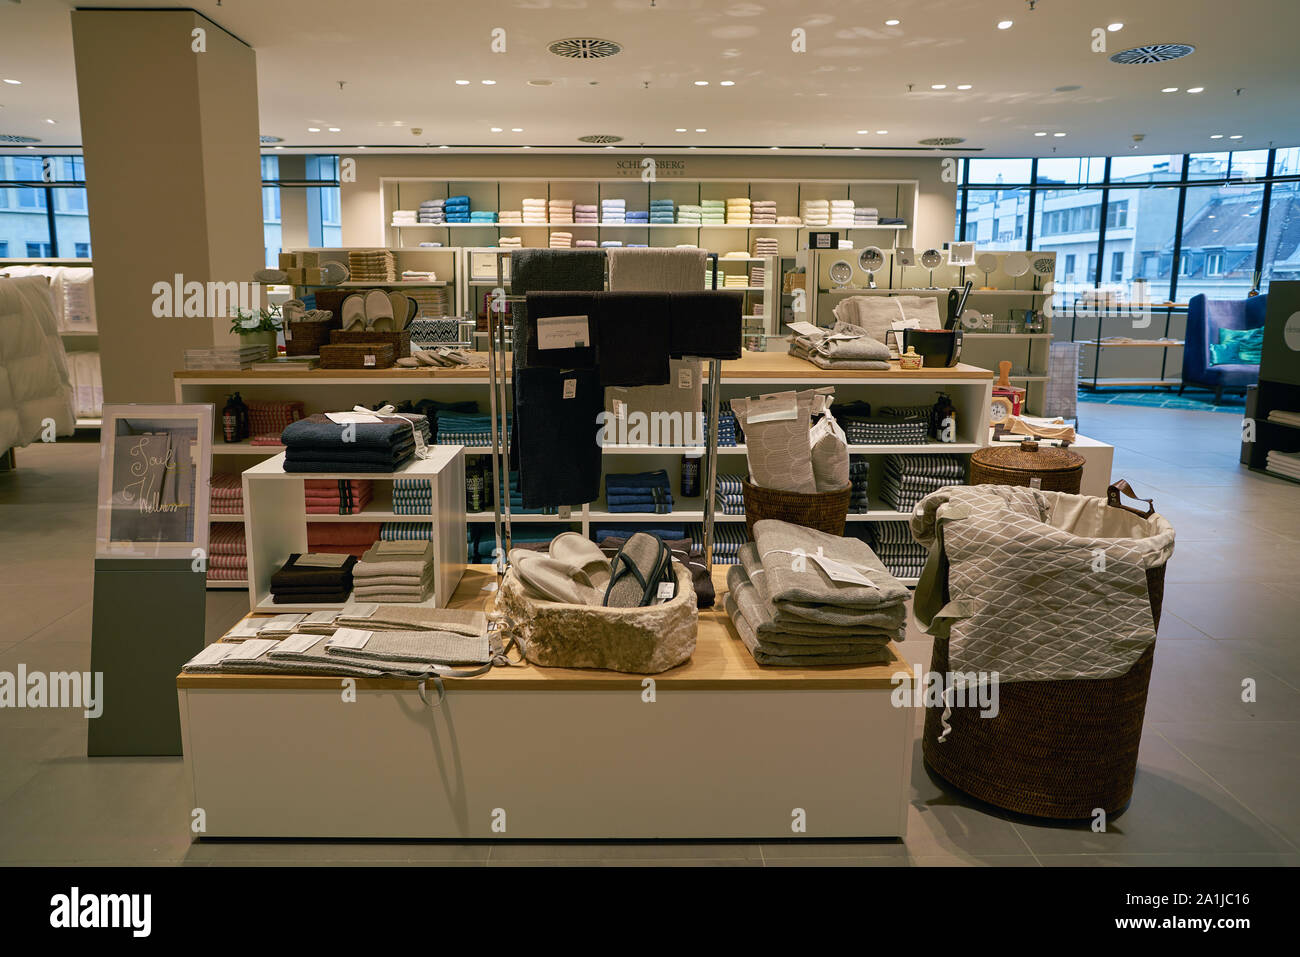 ZURICH, SWITZERLAND - CIRCA OCTOBER, 2018: interior shot of Jelmoli department store in Zurich. Stock Photo